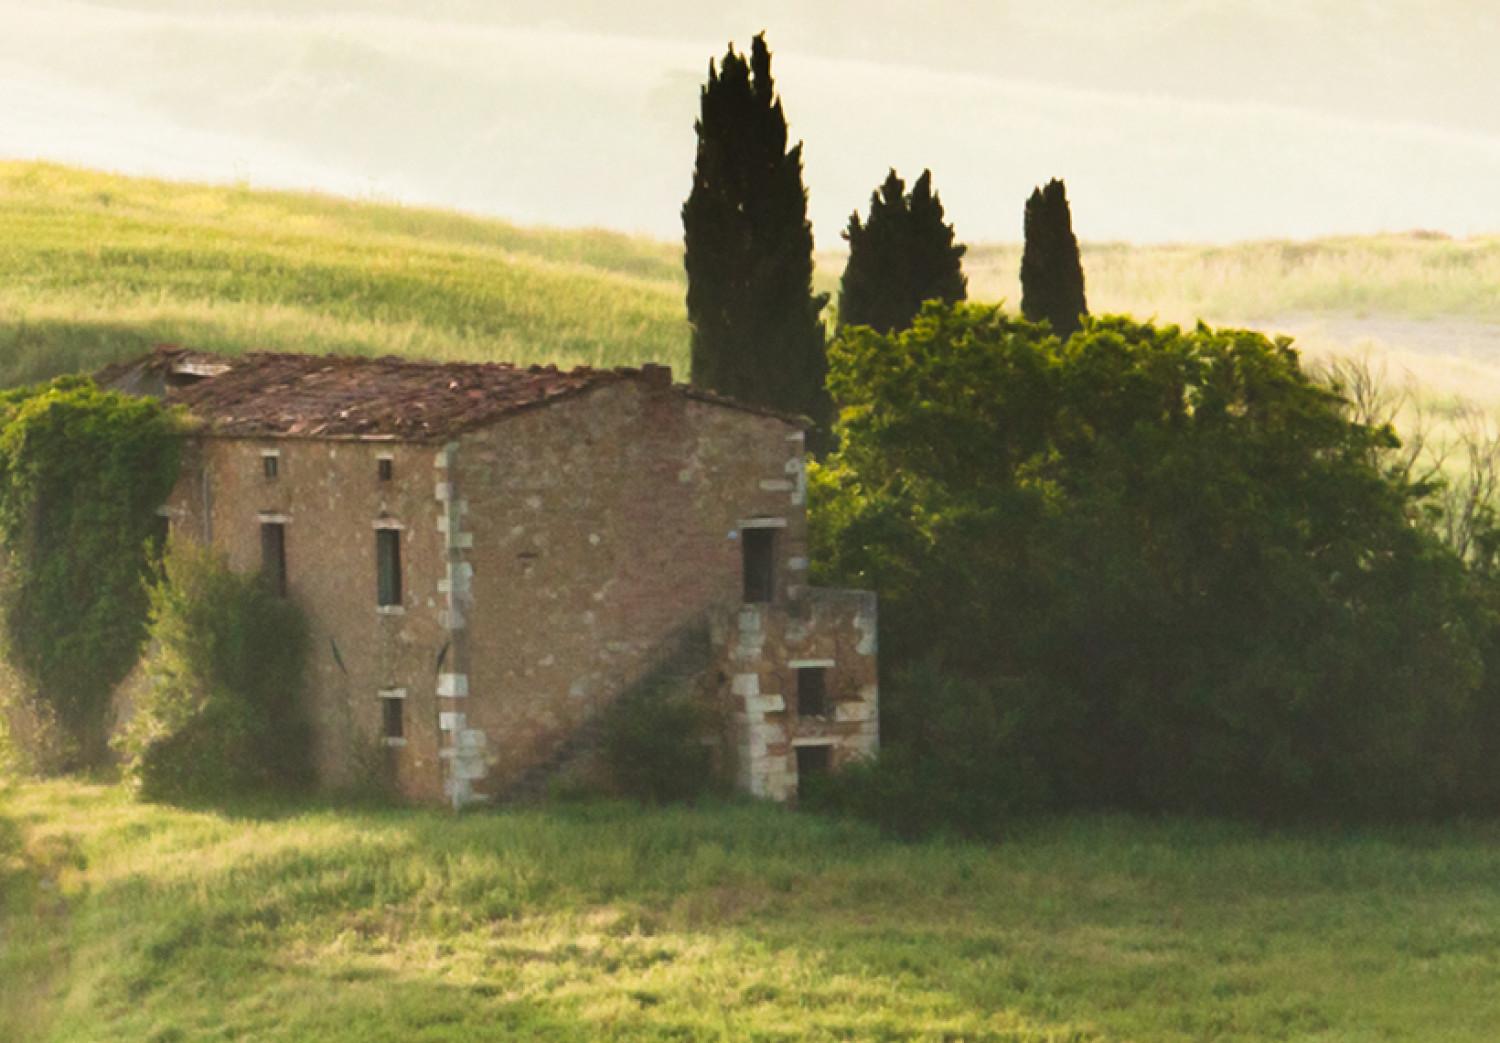 Cuadro decorativo Tuscany landscapes